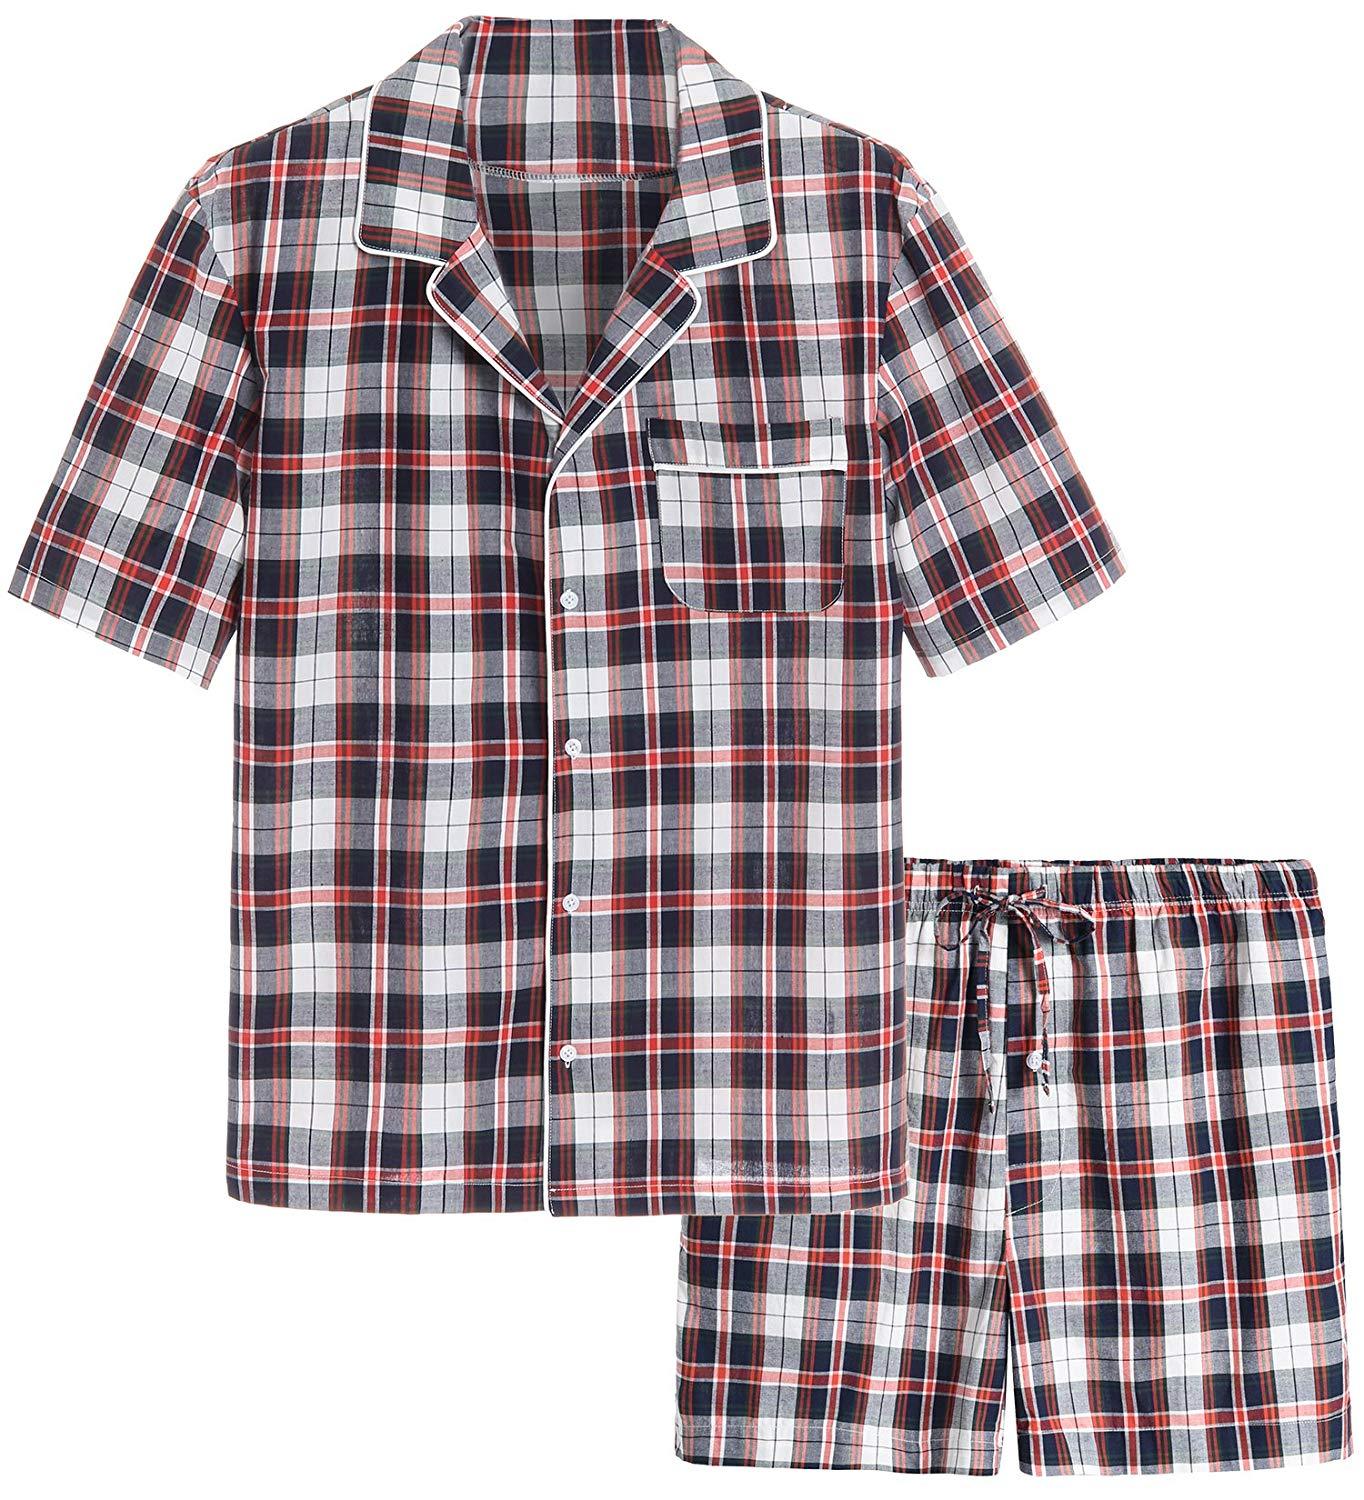 Men's Cotton Woven Short Sleepwear Pajama Set - Latuza